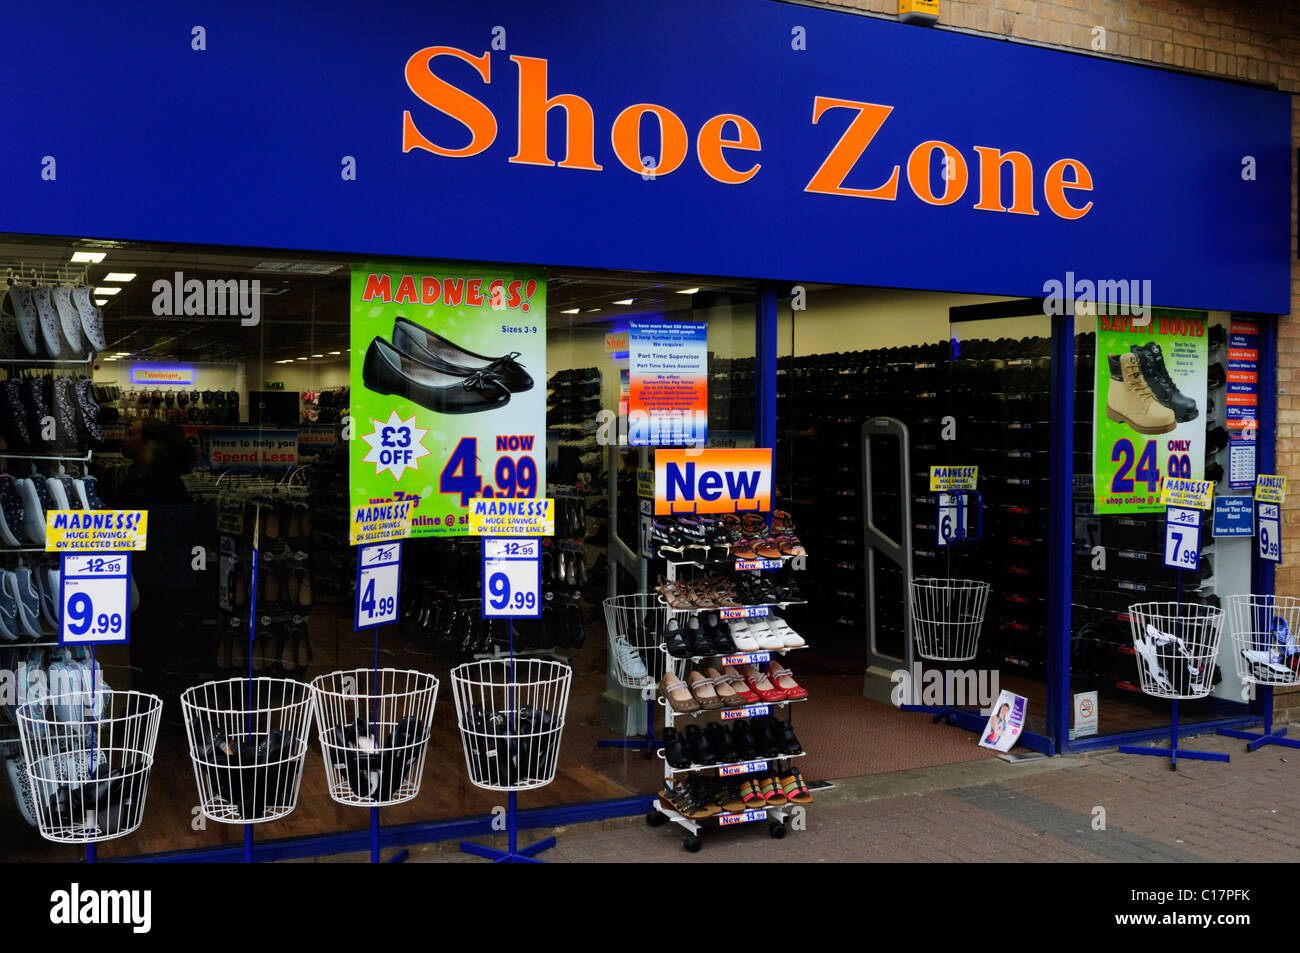 shoe zone westfield stratford Shop 